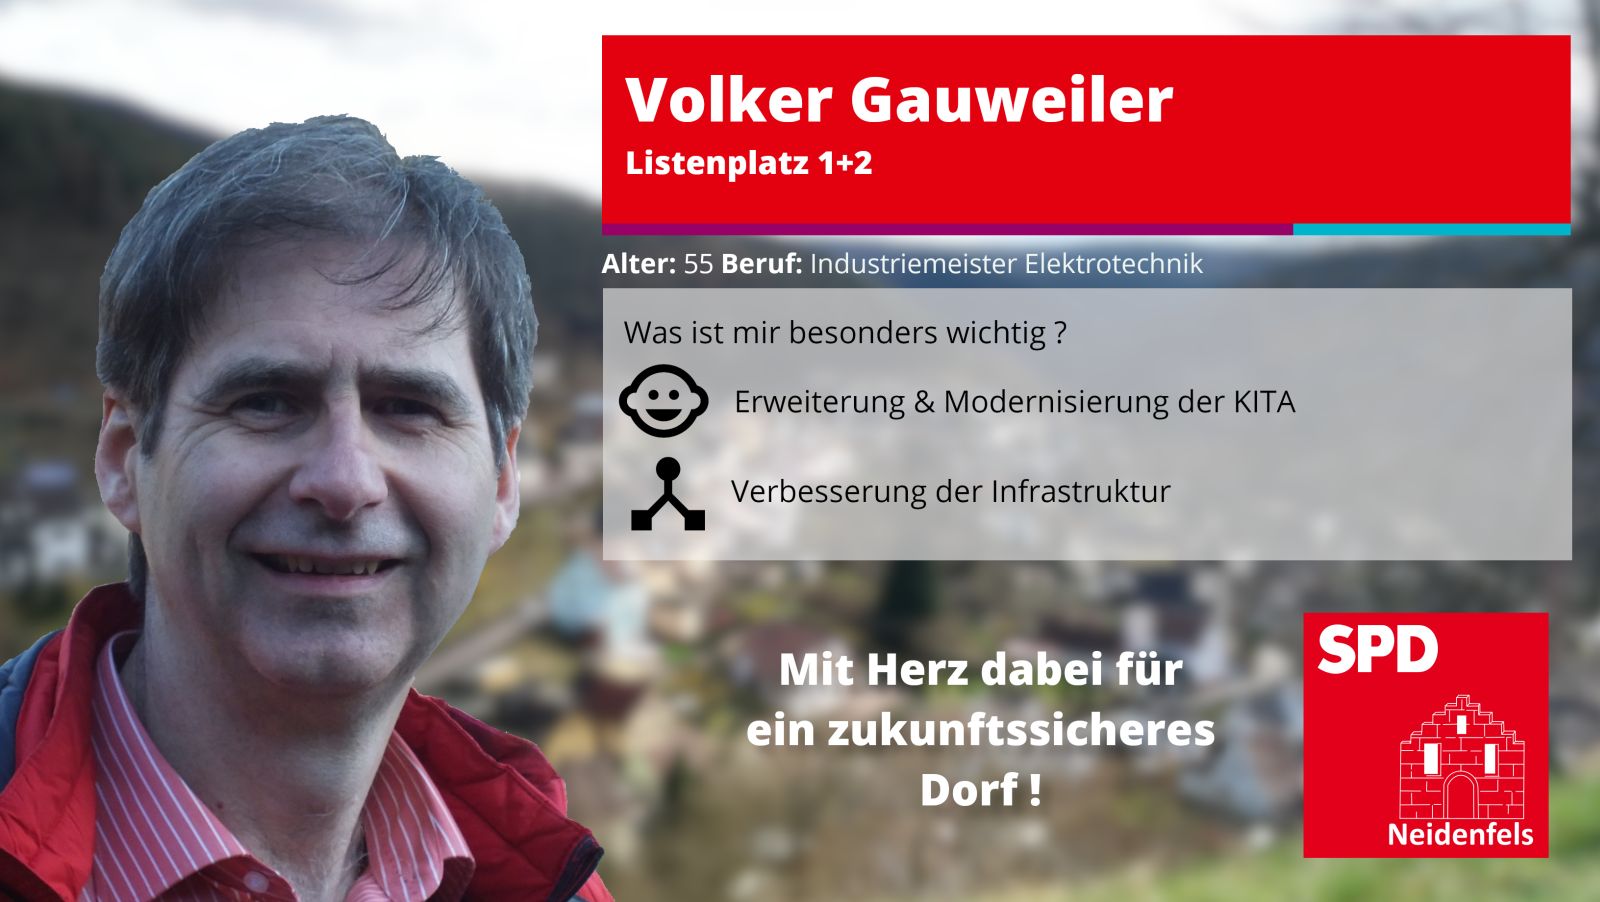 Volker Gauweiler Listenplatz 1+2 Alter: 55 Beruf Industriemeister Elektrotechnik. Was ist mir besonders wichtig: Kita & Infrastruktur